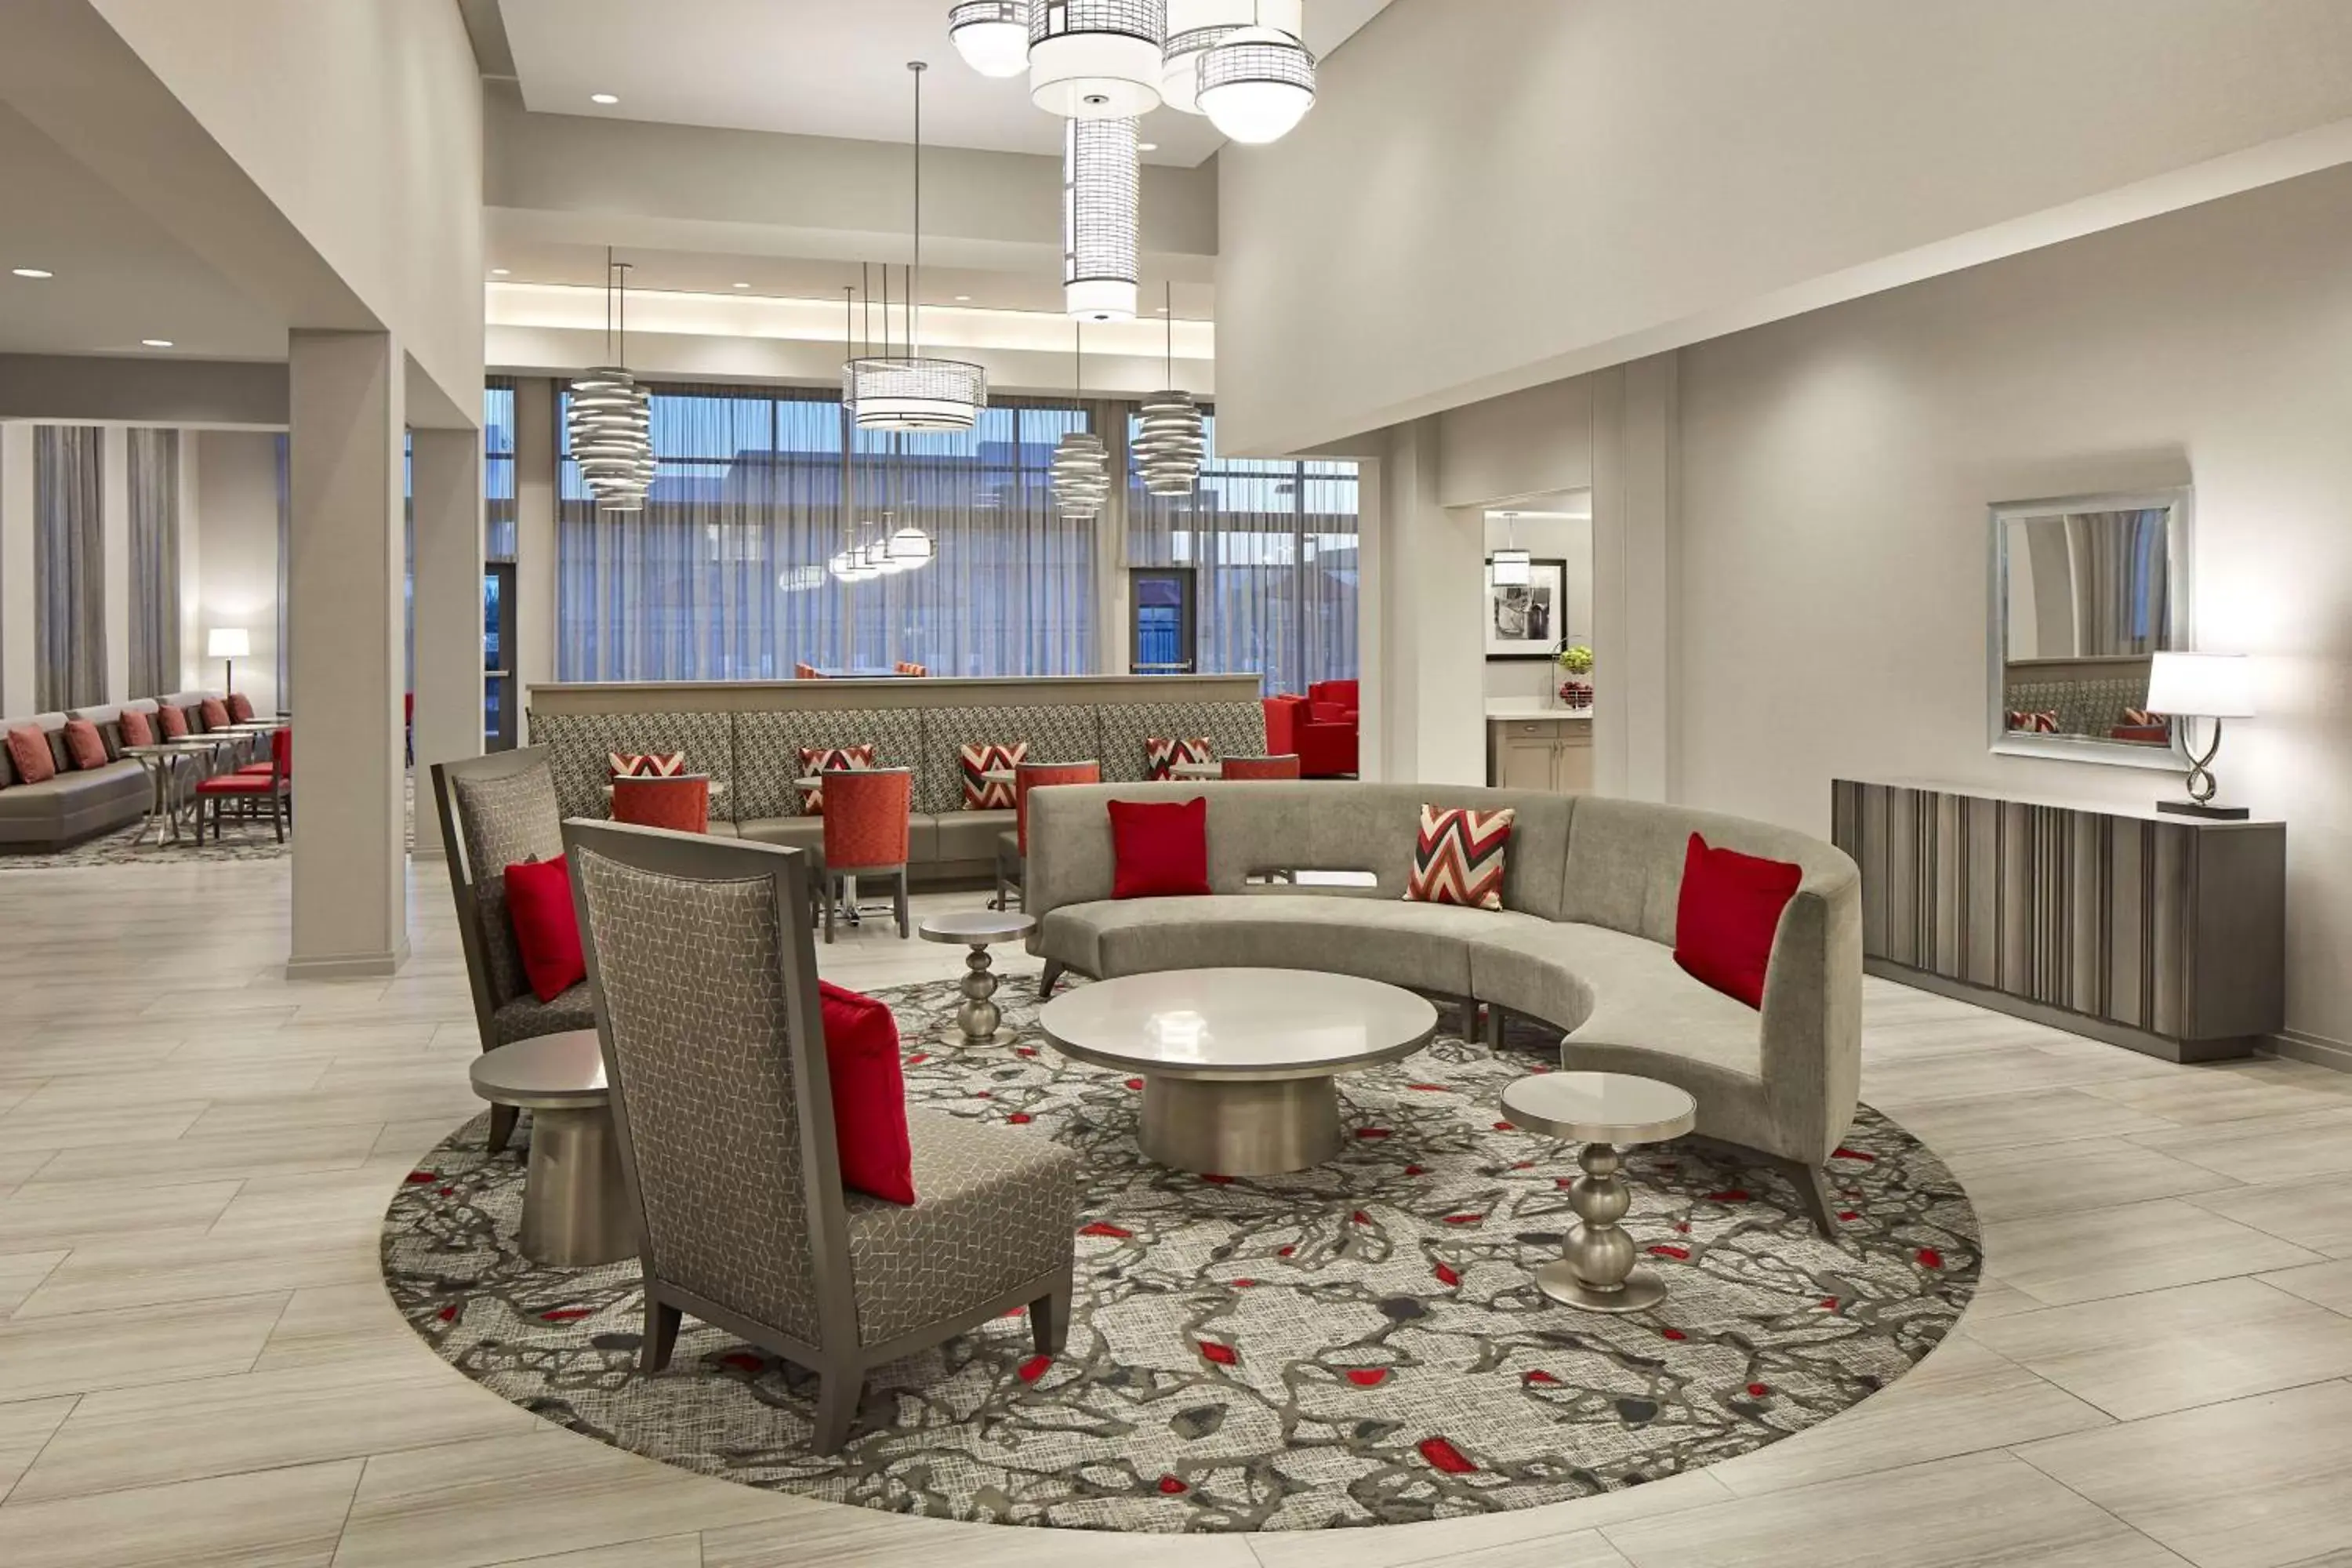 Lobby or reception, Lounge/Bar in Hampton Inn Long Beach Airport, Ca